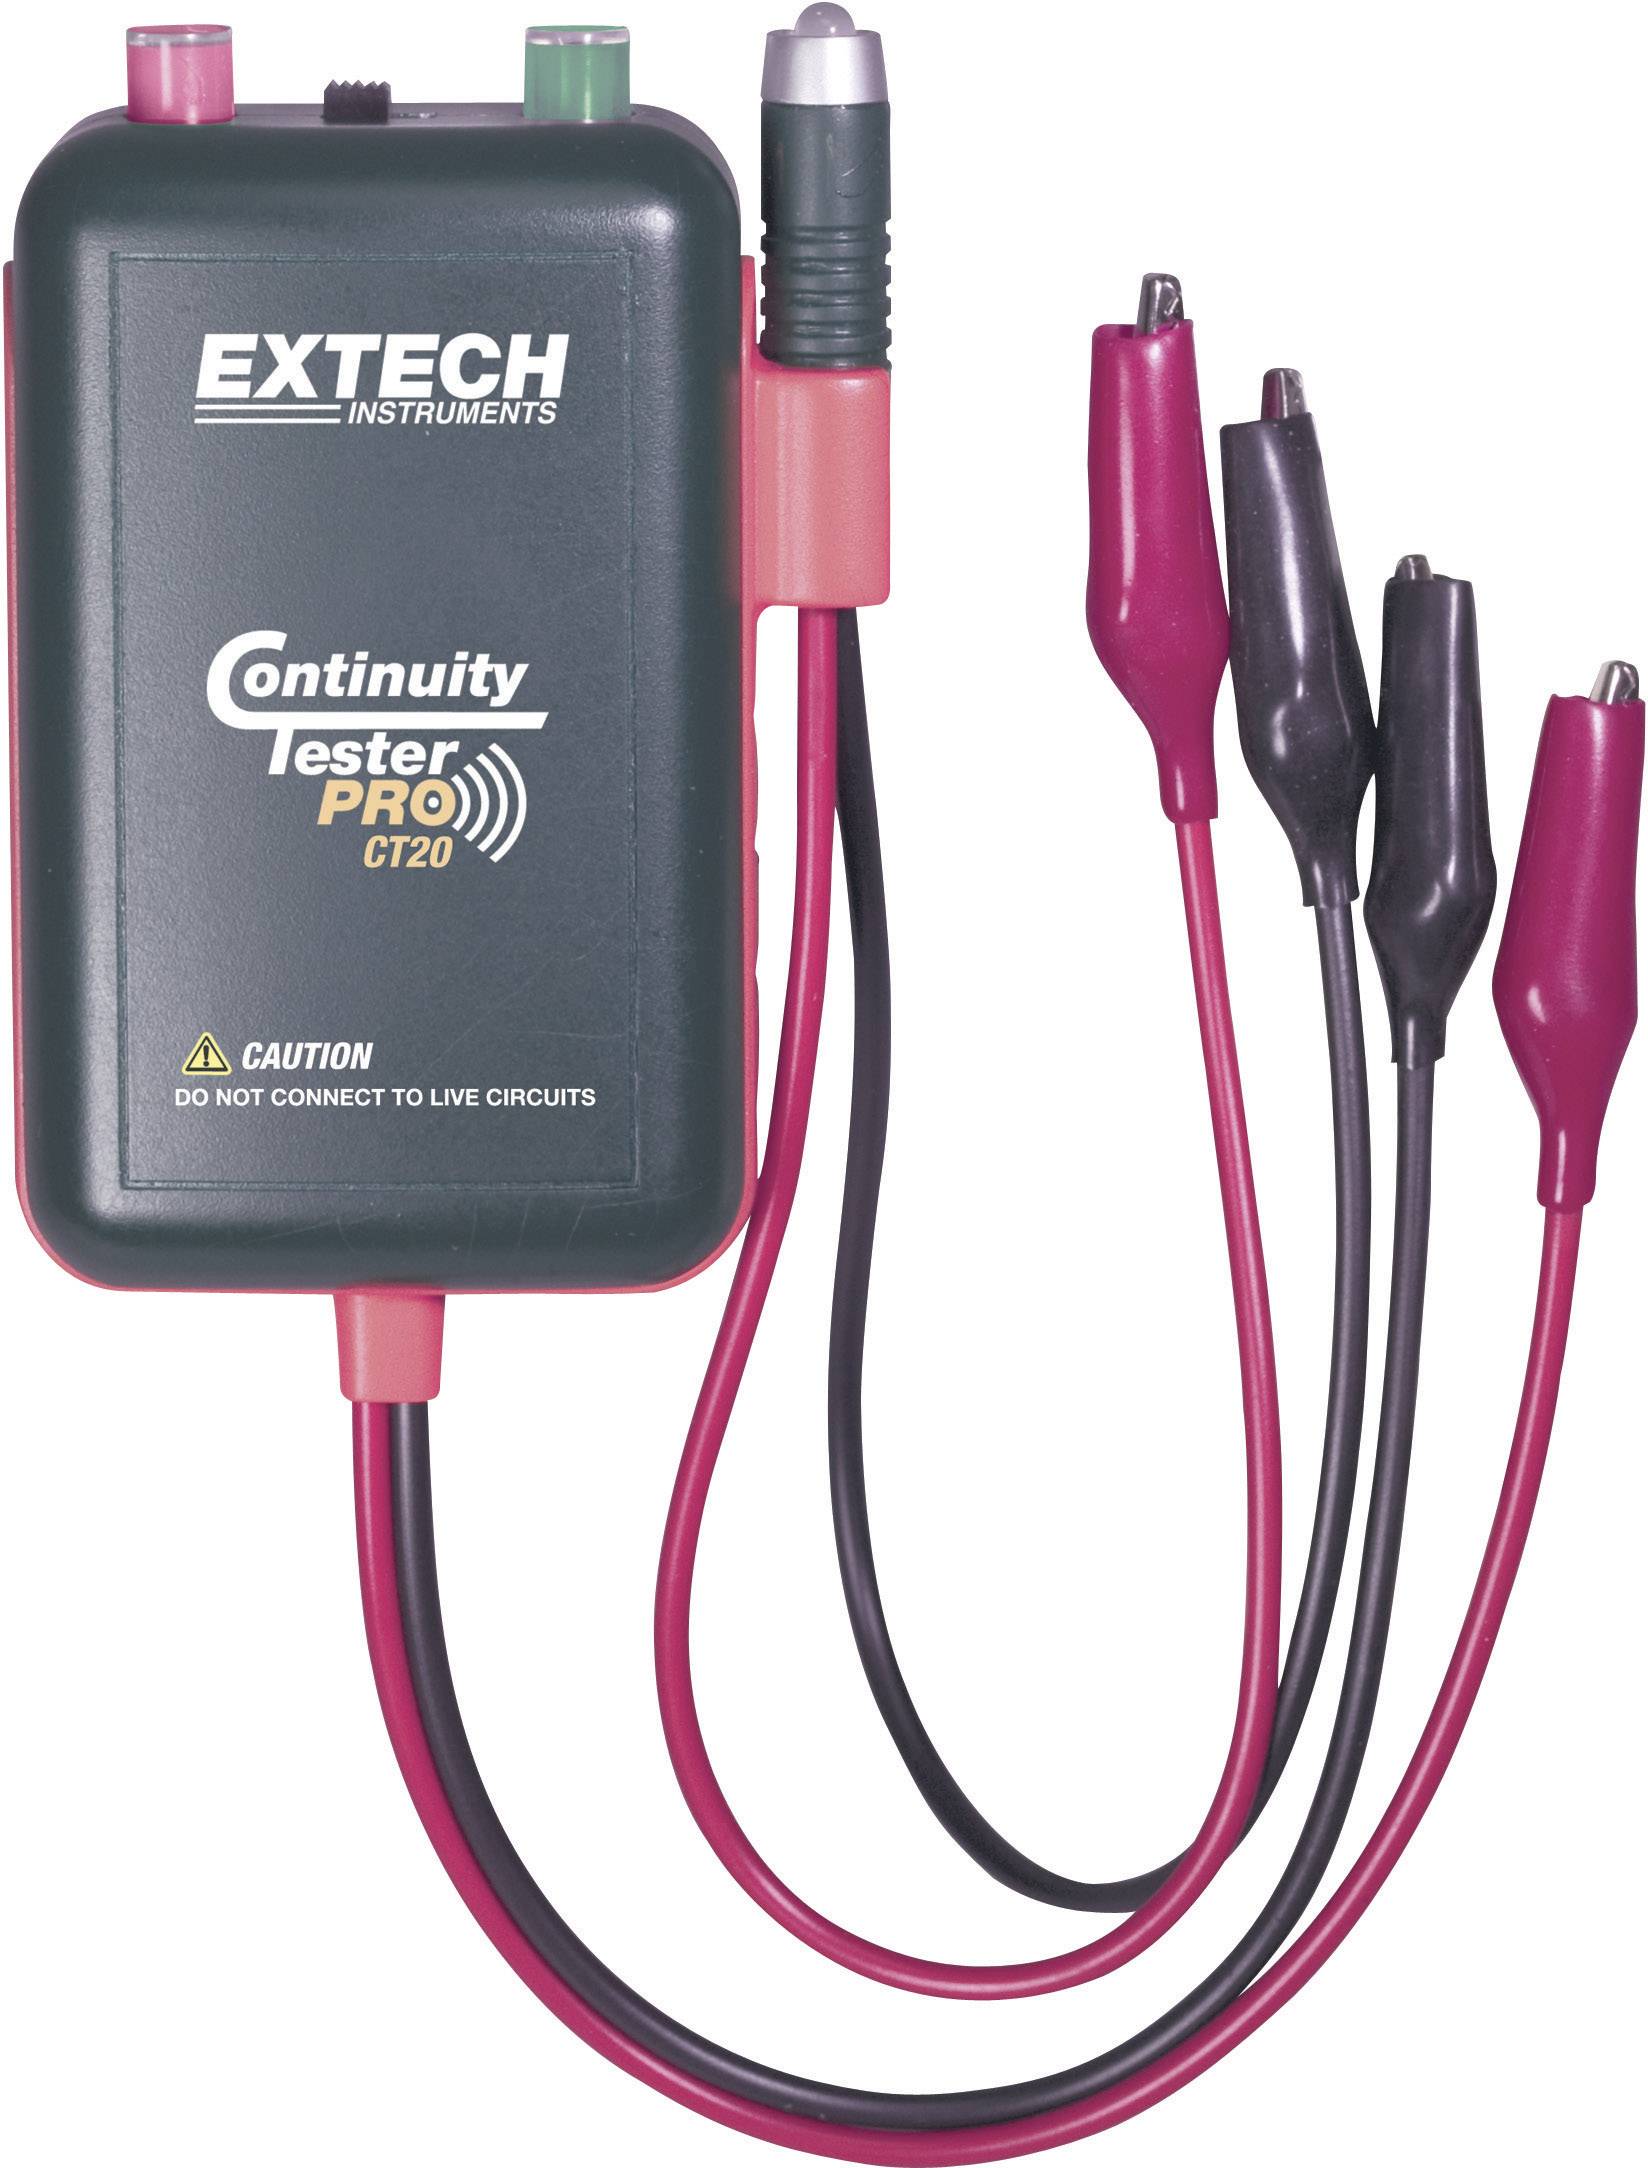 EXTECH CT20 Kabel-Prüfgerät, Kabeltester Geeignet für Identifikations-, Durchgangs-, Unterbrechun